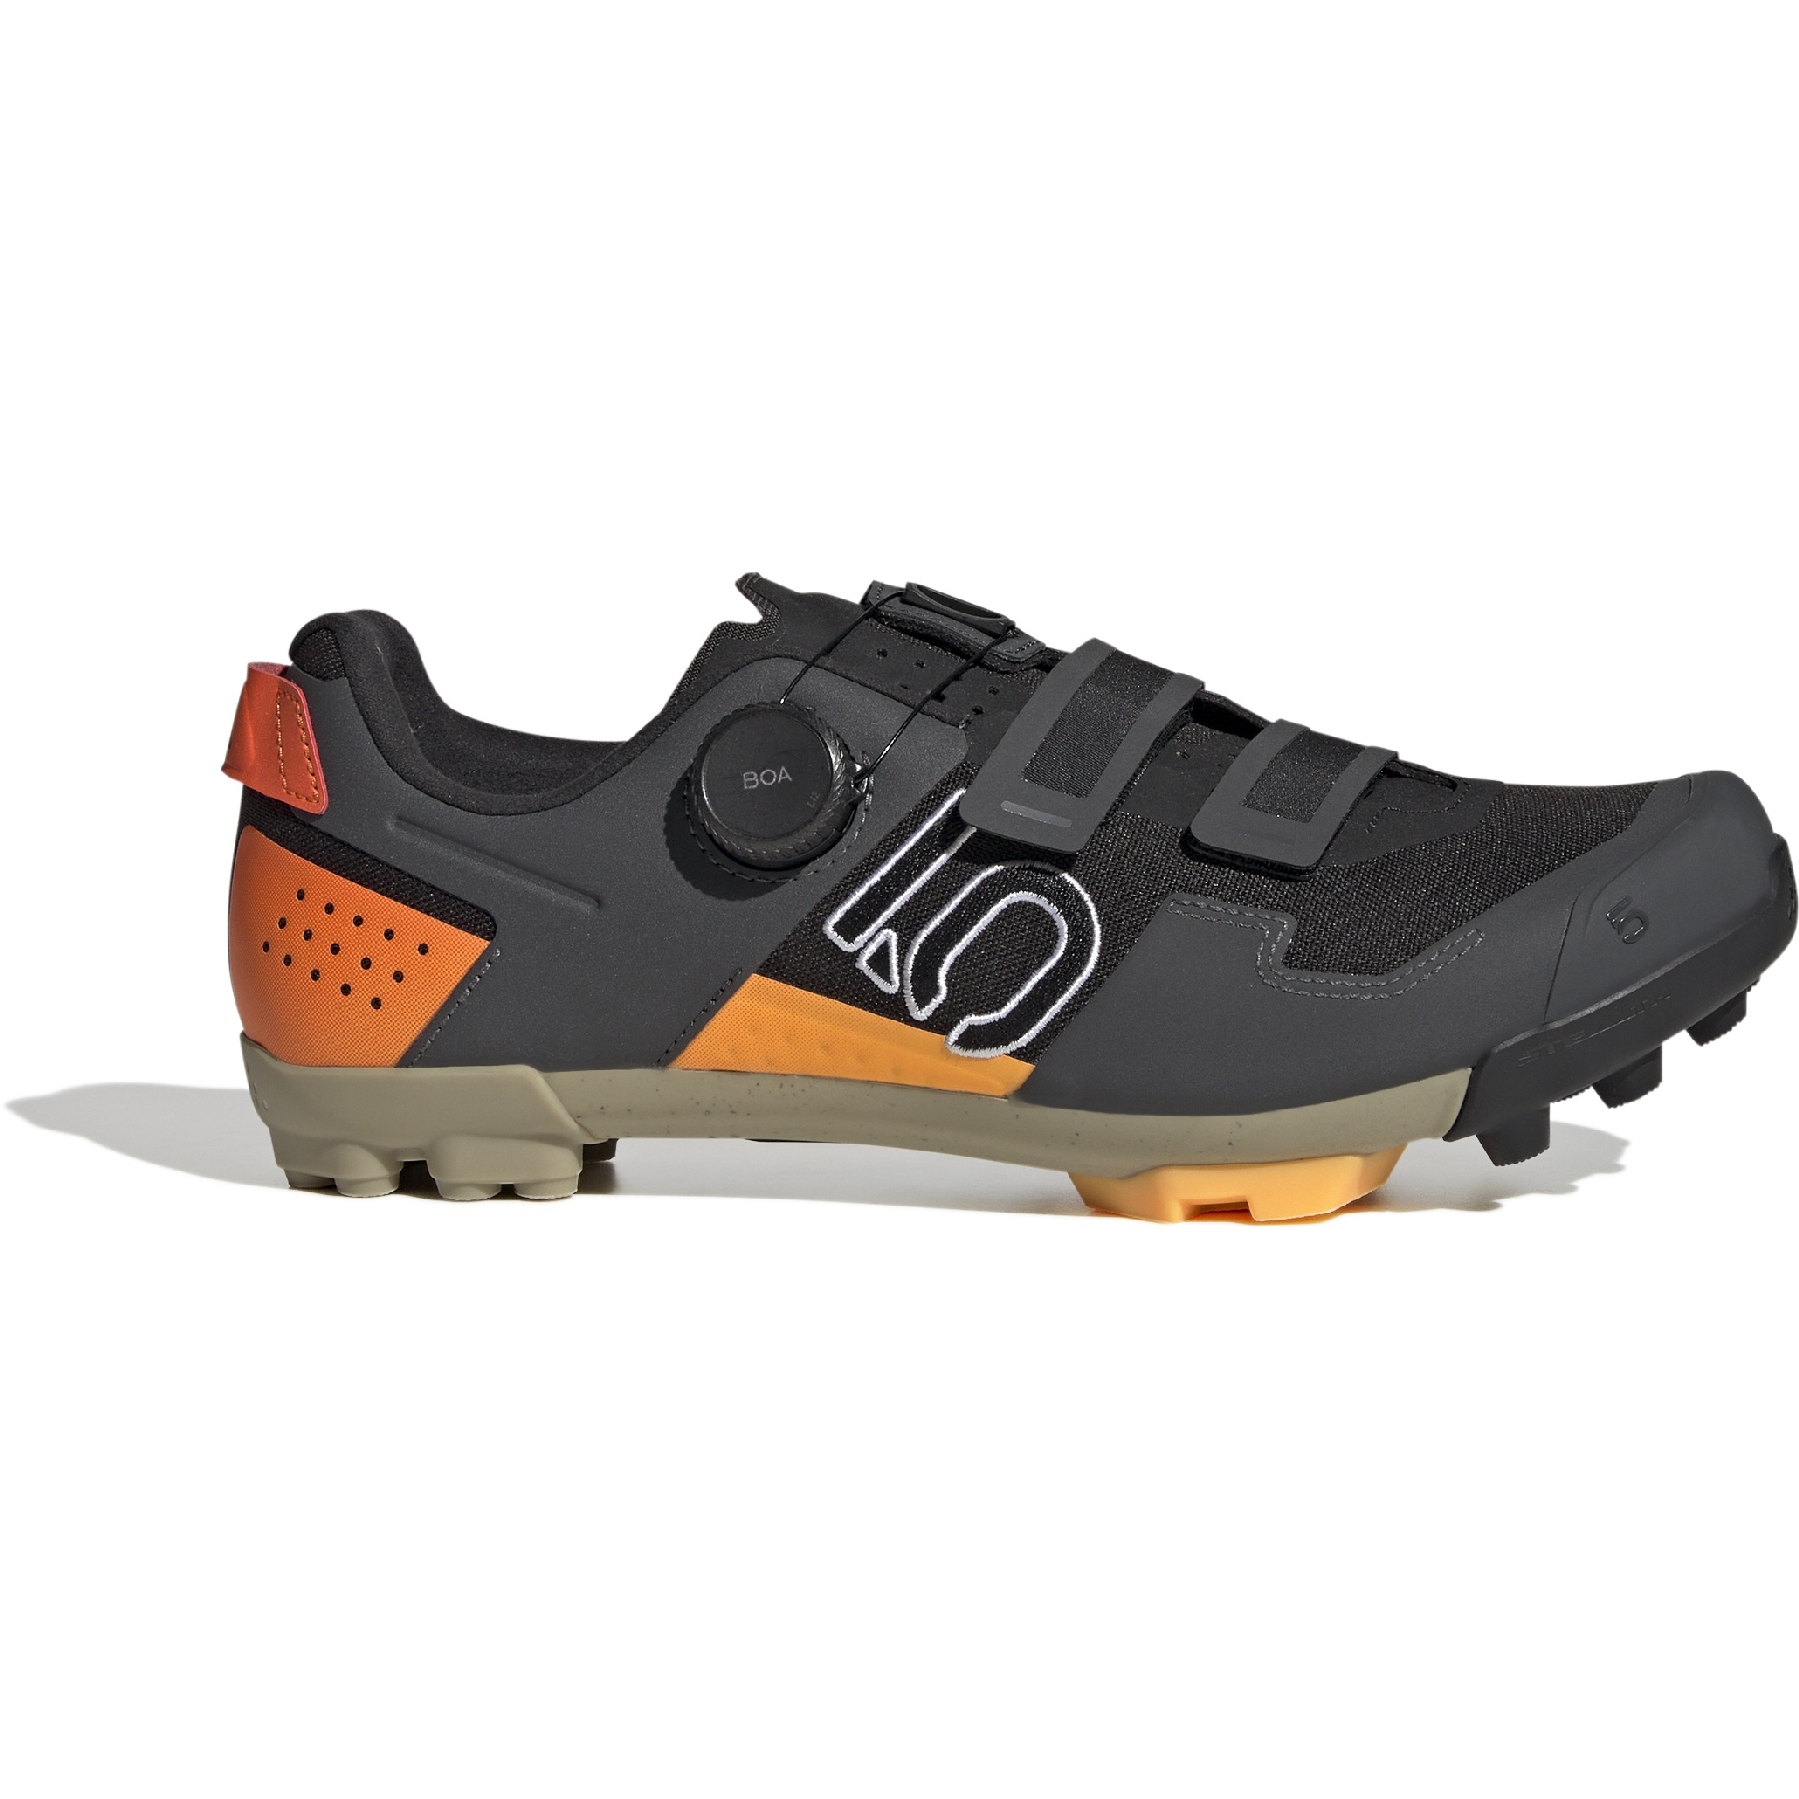 Produktbild von Five Ten Kestrel Boa - Mountainbiking Schuhe - Core Black / Cloud White / Impact Orange